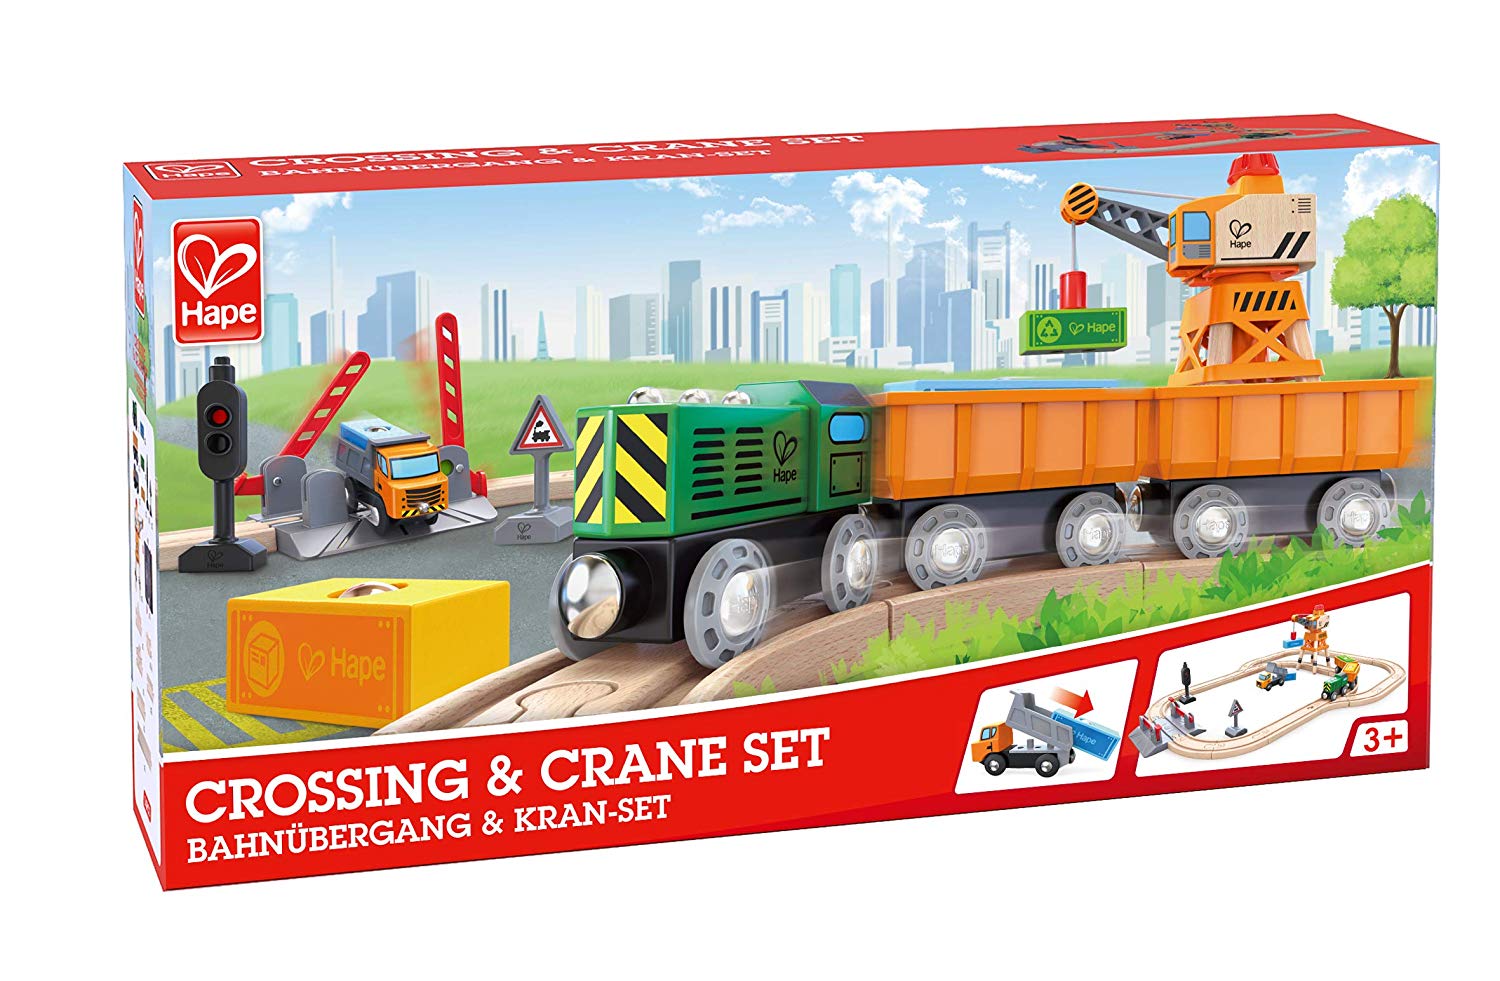 kidz-stuff-online - Hape Railway Crossing & Crane Wooden Train Set